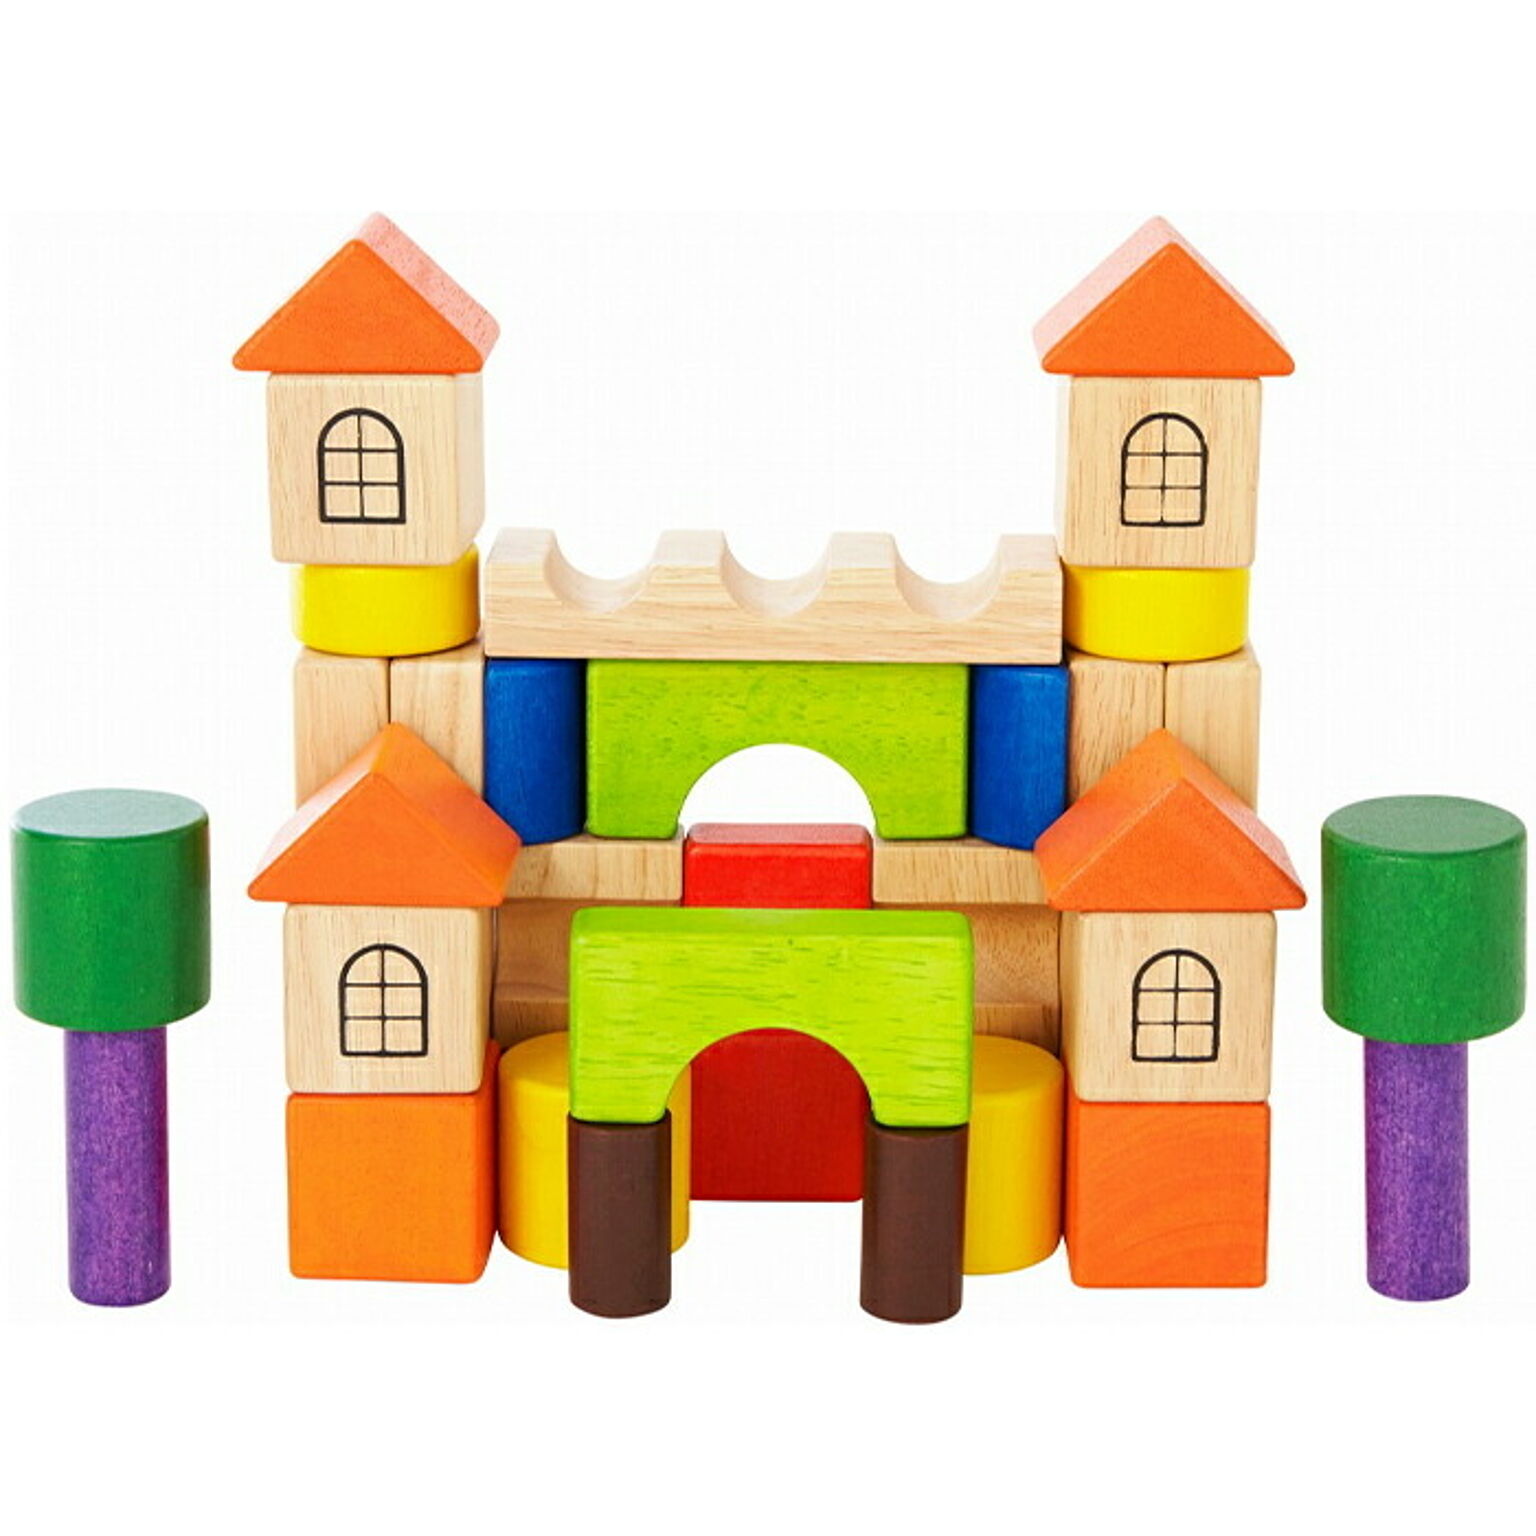 ボイラ edute おもちゃ 木のおもちゃ 積み木 知育 知育玩具 1歳 2歳 木 天然木 積木 ブロック 子供 女の子 男の子 誕生日 ギフト ベーシックスキルビルダーズ